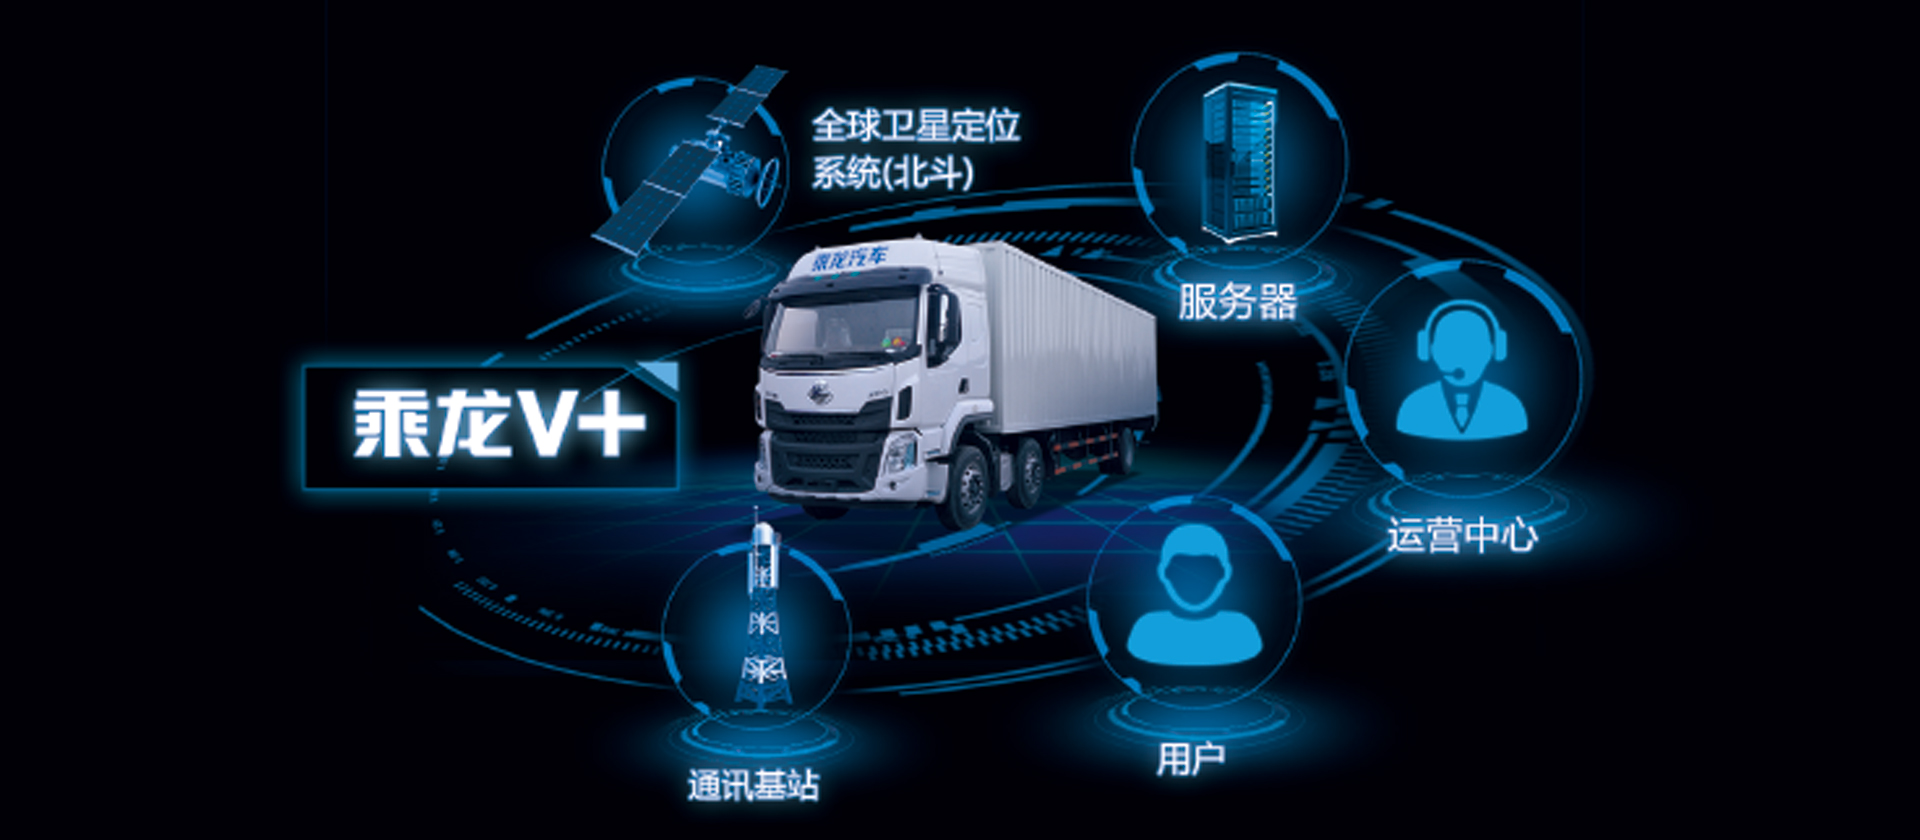 h5牵引车 全新开发乘龙v 车联网系统，智能卡车，十大功能帮助改善驾驶行为50%，降低车辆7%-10%油耗，提升20%出勤率和配货率